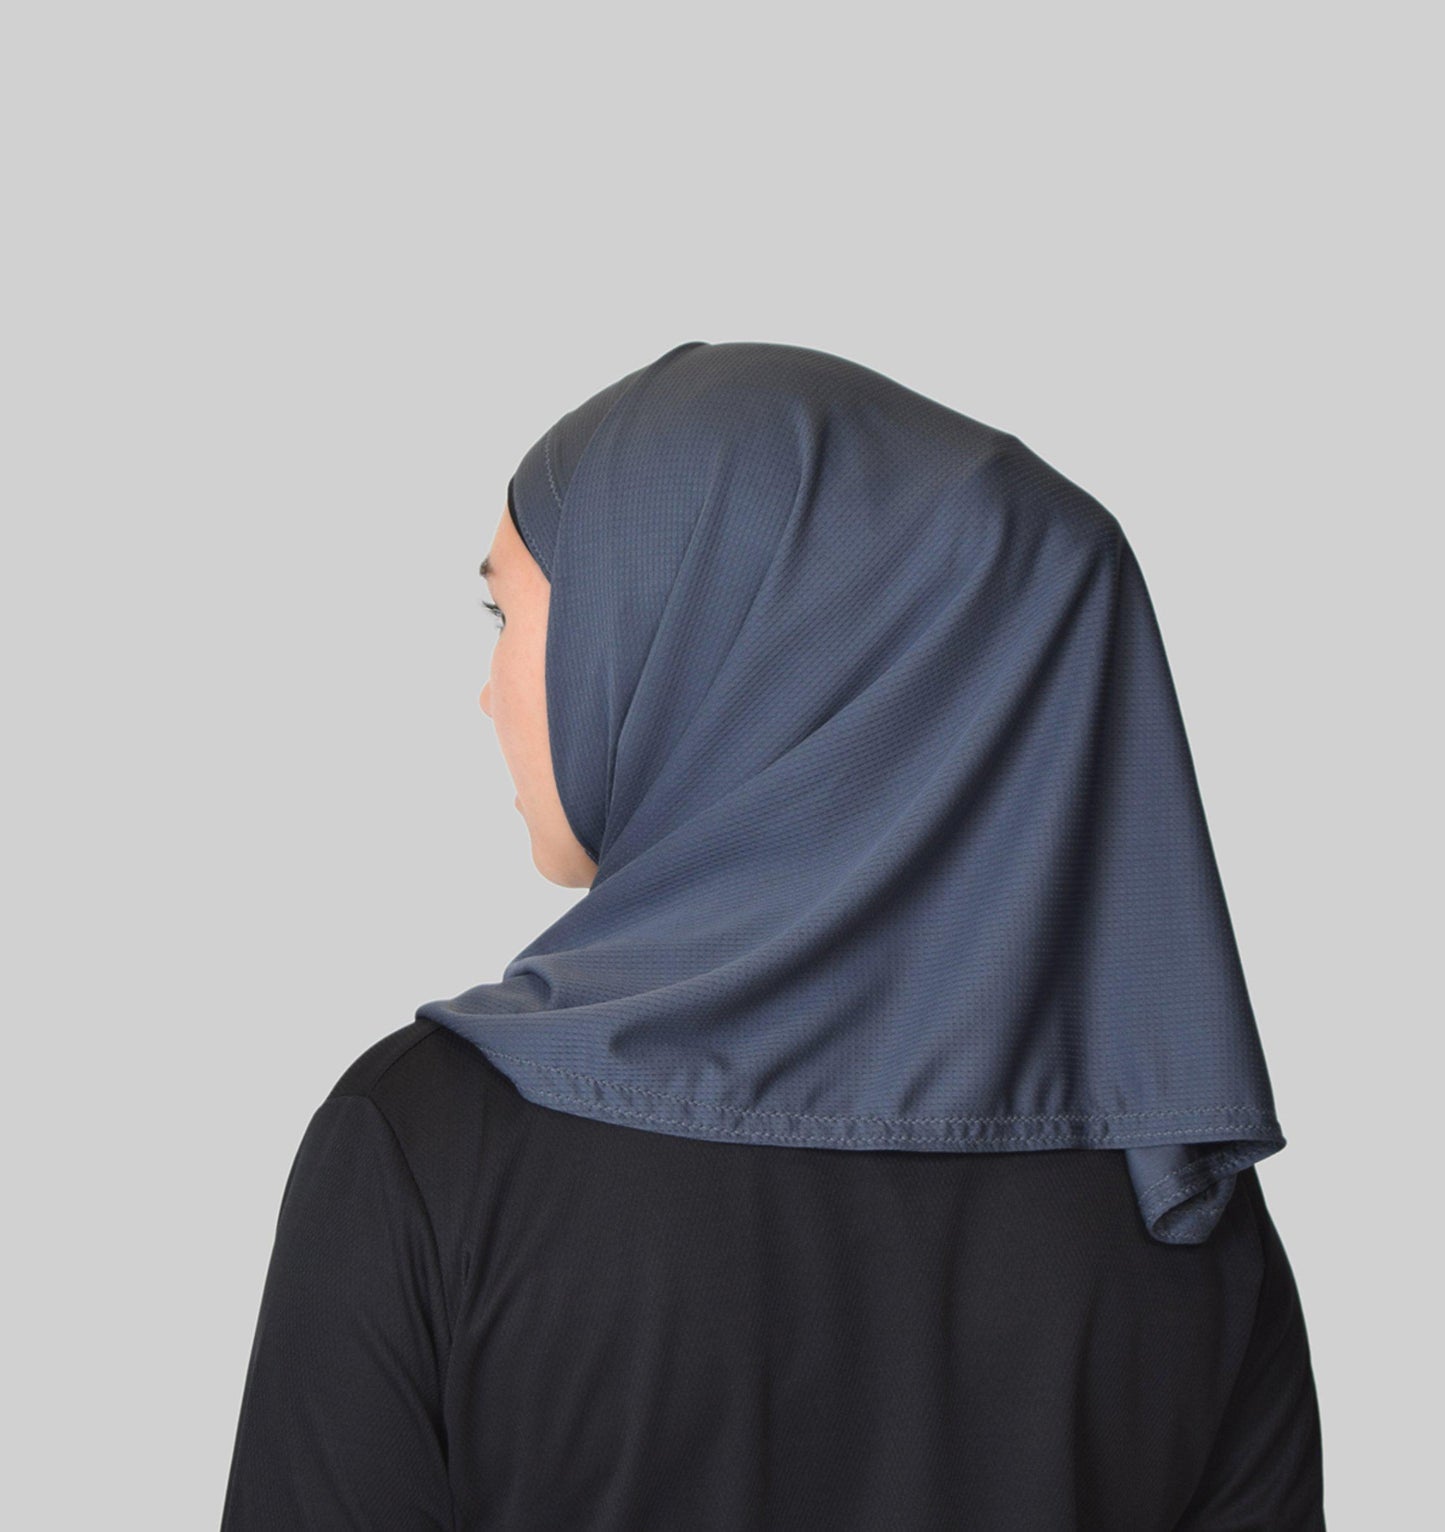 Sports Hijab 2.0 - Grey